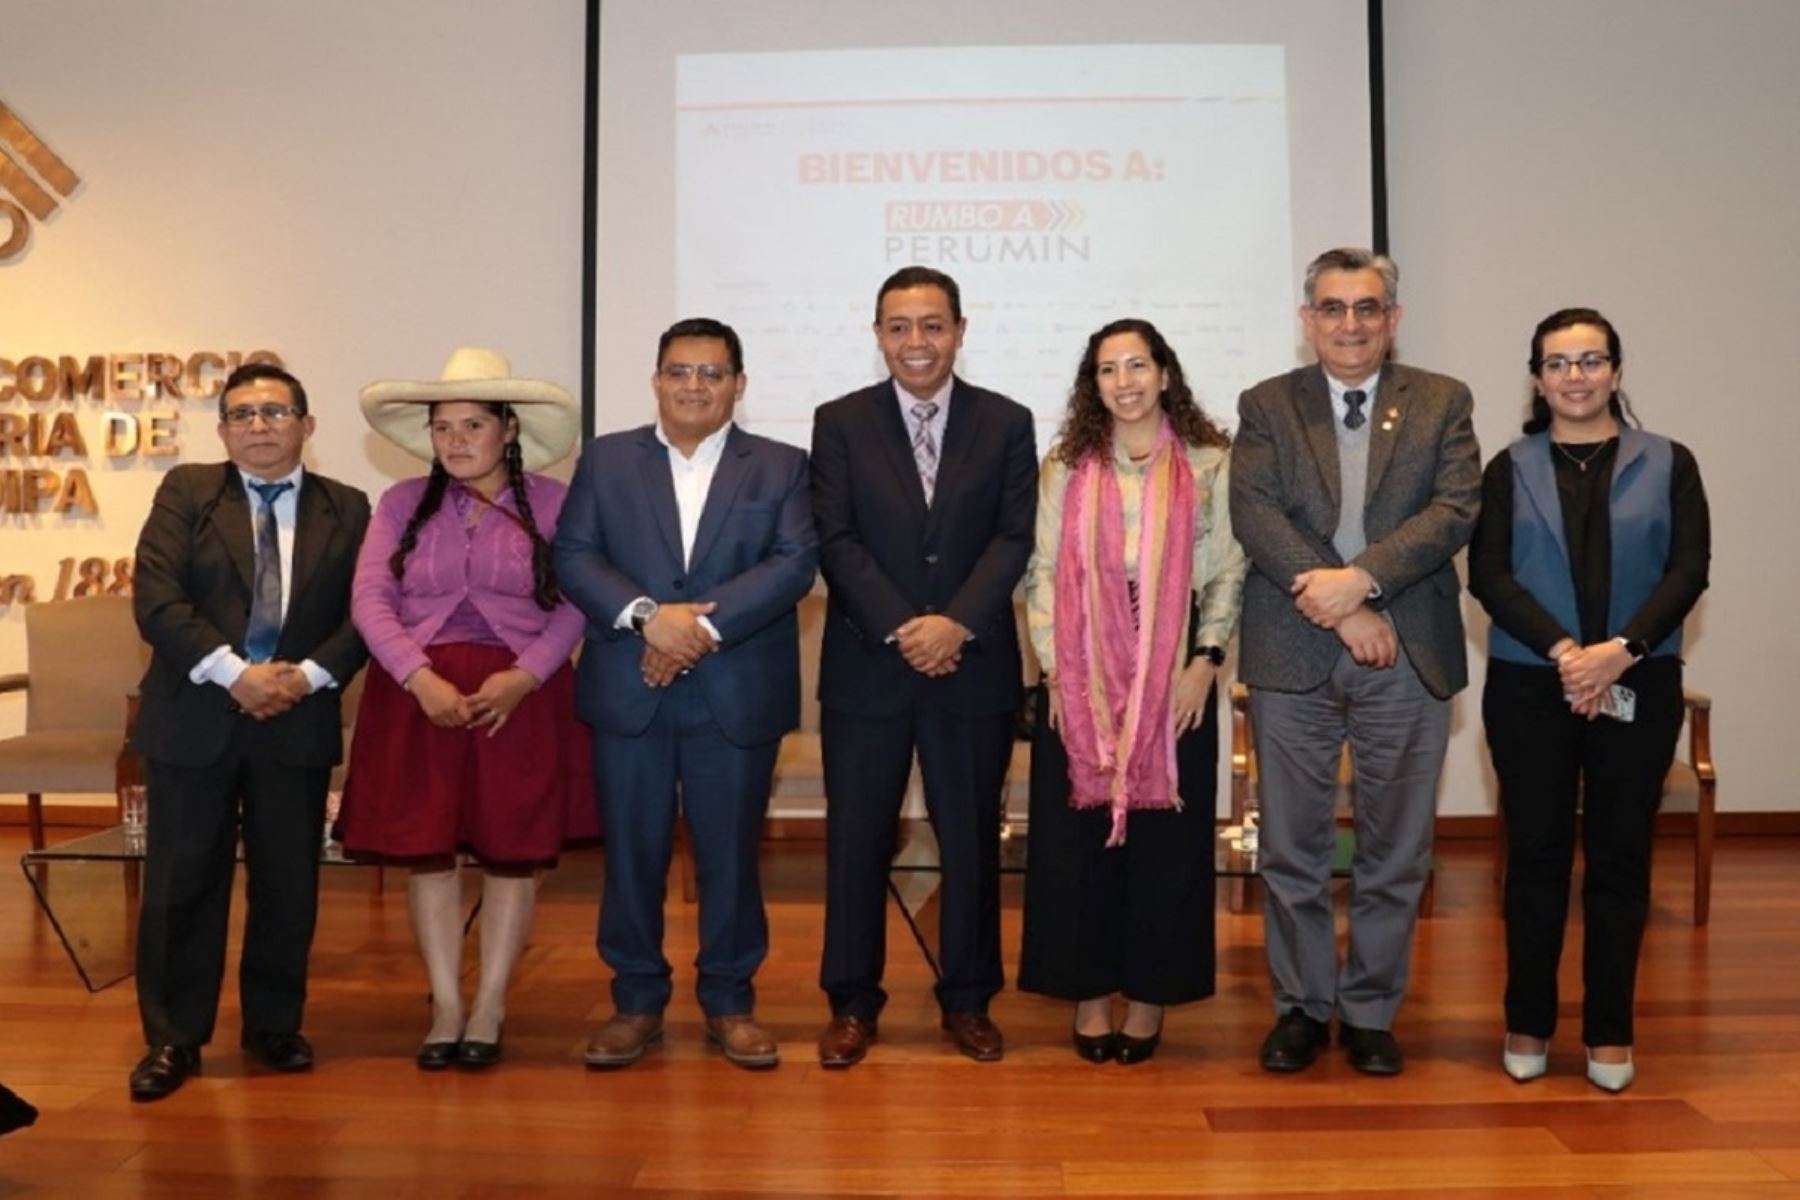 Emprendedores sociales de diversas partes del Perú llegan a Perumin 35